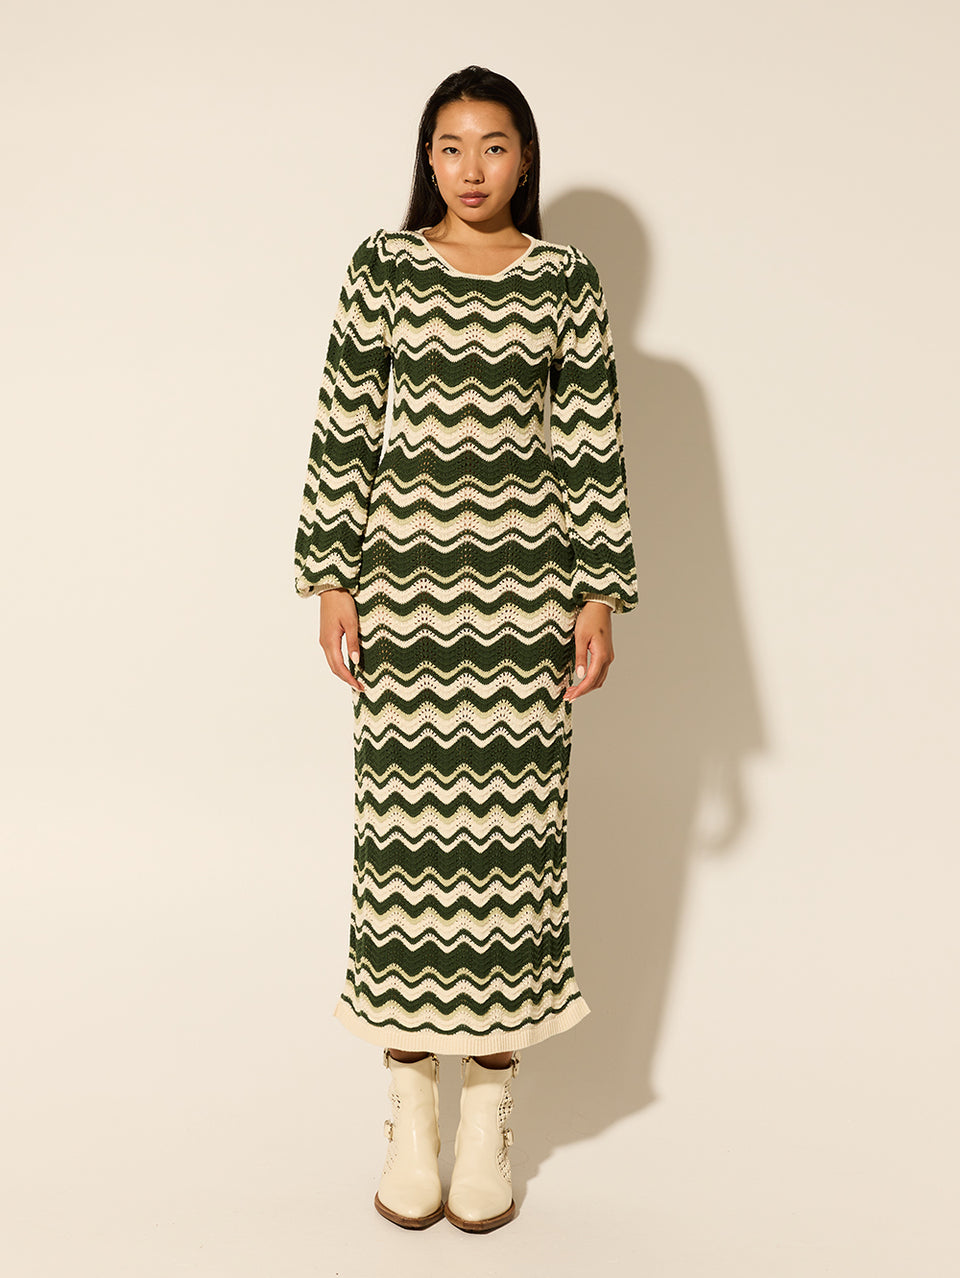 Marcella Knit Midi Dress KIVARI | Model wears green and cream knit midi dress